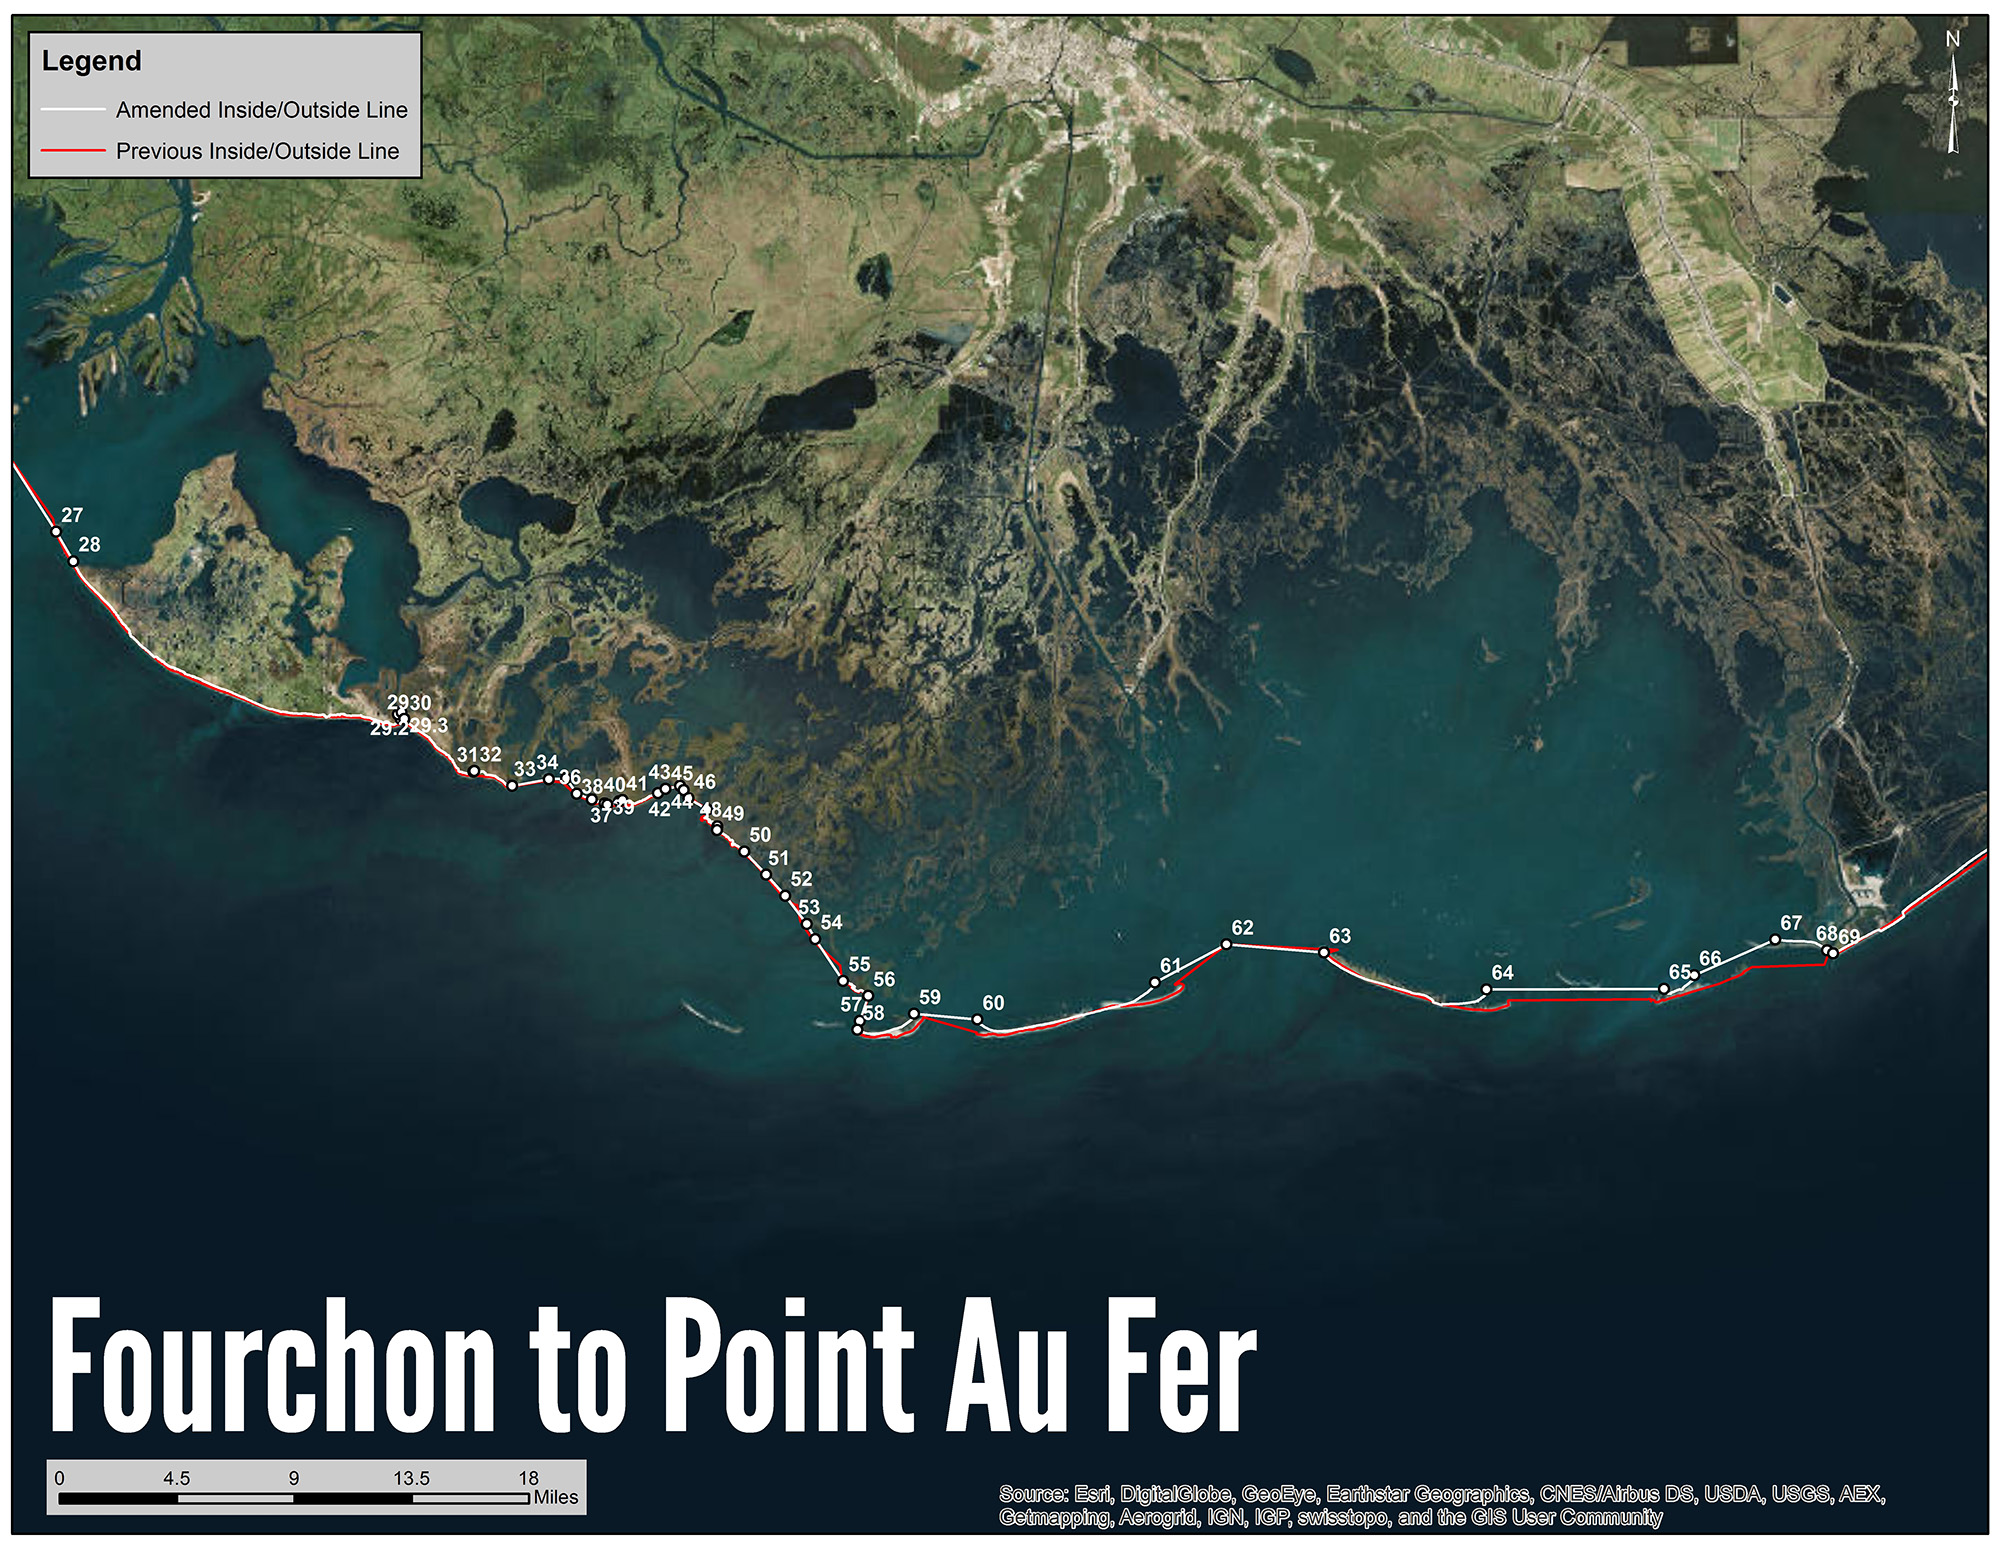 Fourchon to Point Au Fer Shrimp Line Map